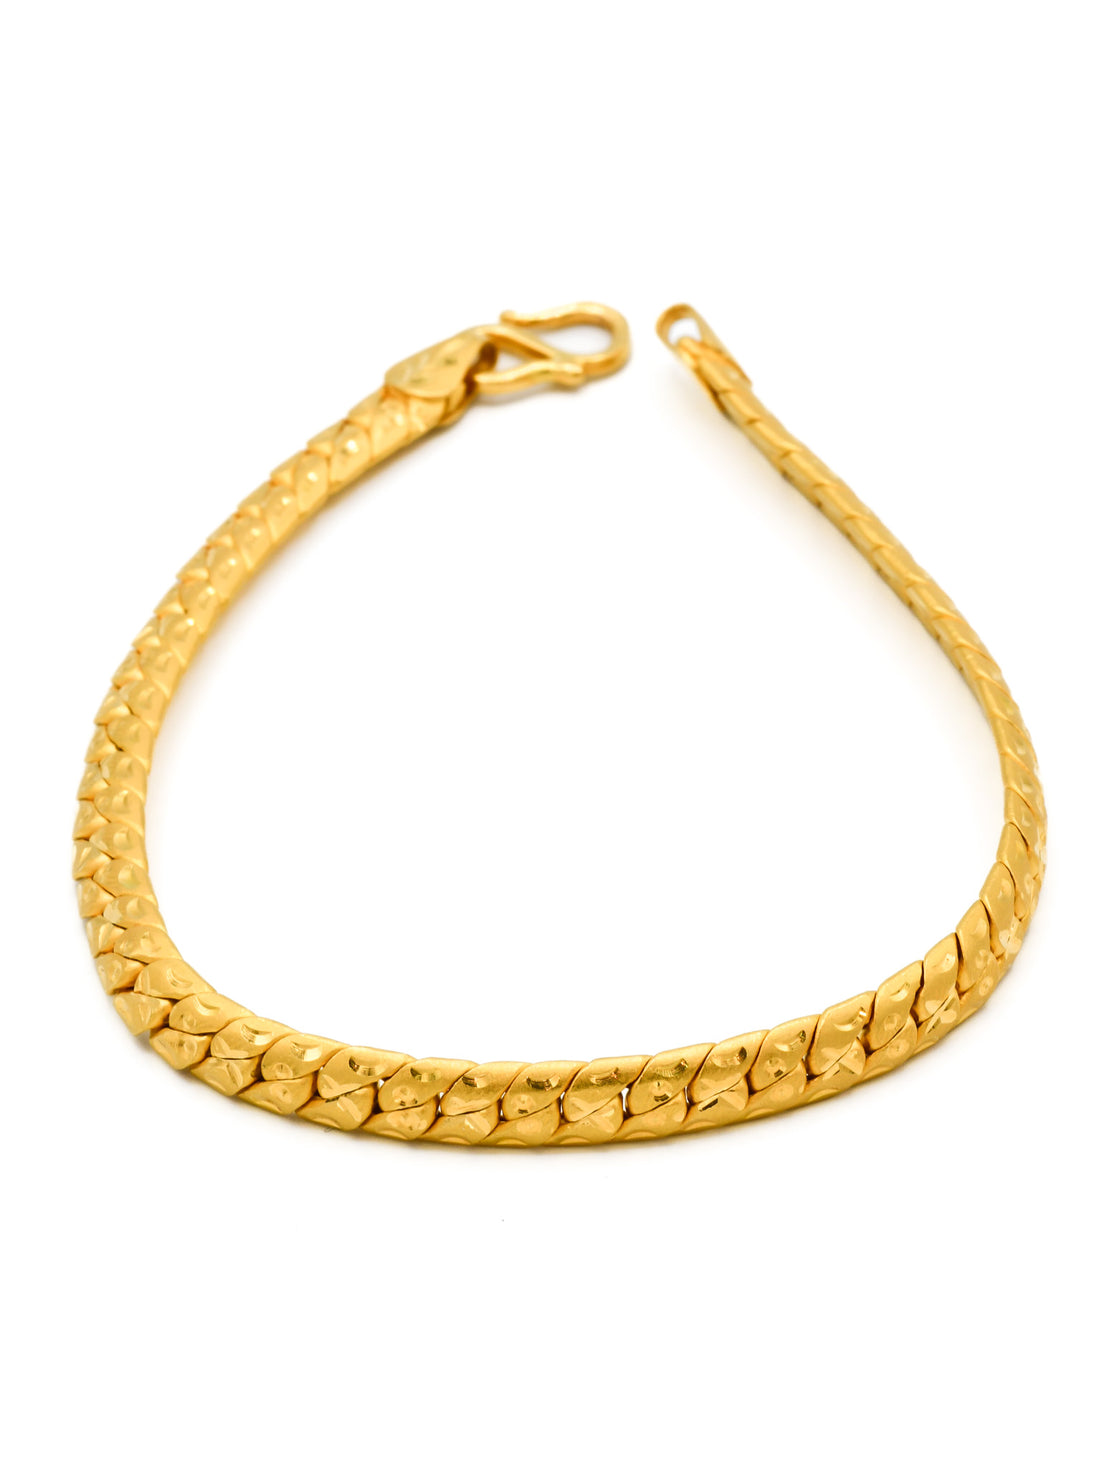 22ct Gold Mens Bracelet - Roop Darshan